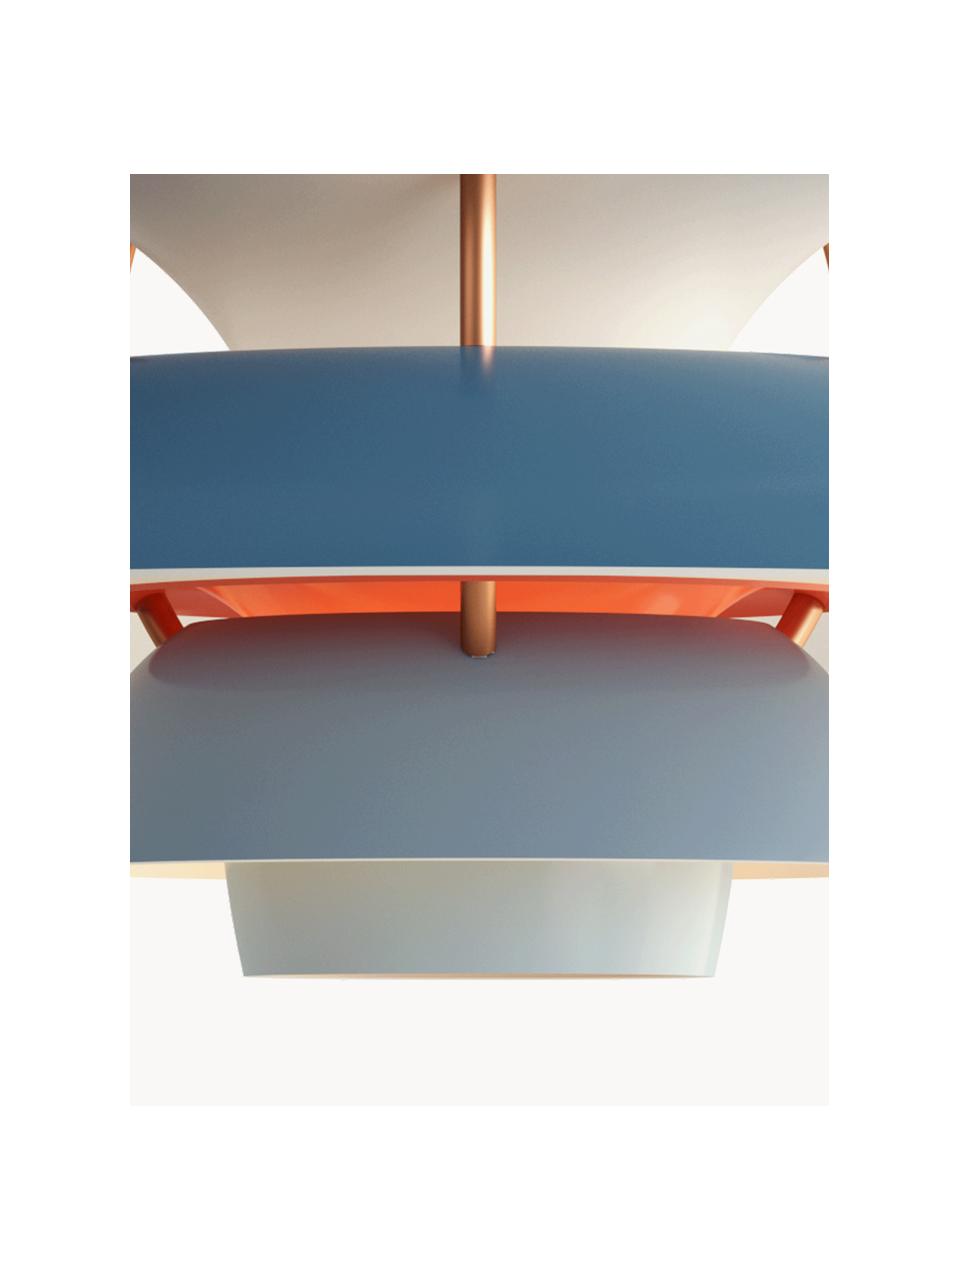 Lámpara de techo PH 5 Mini, Pantalla: metal recubierto, Cable: cubierto en tela, Tonos azules, dorado, Ø 30 x Al 16 cm